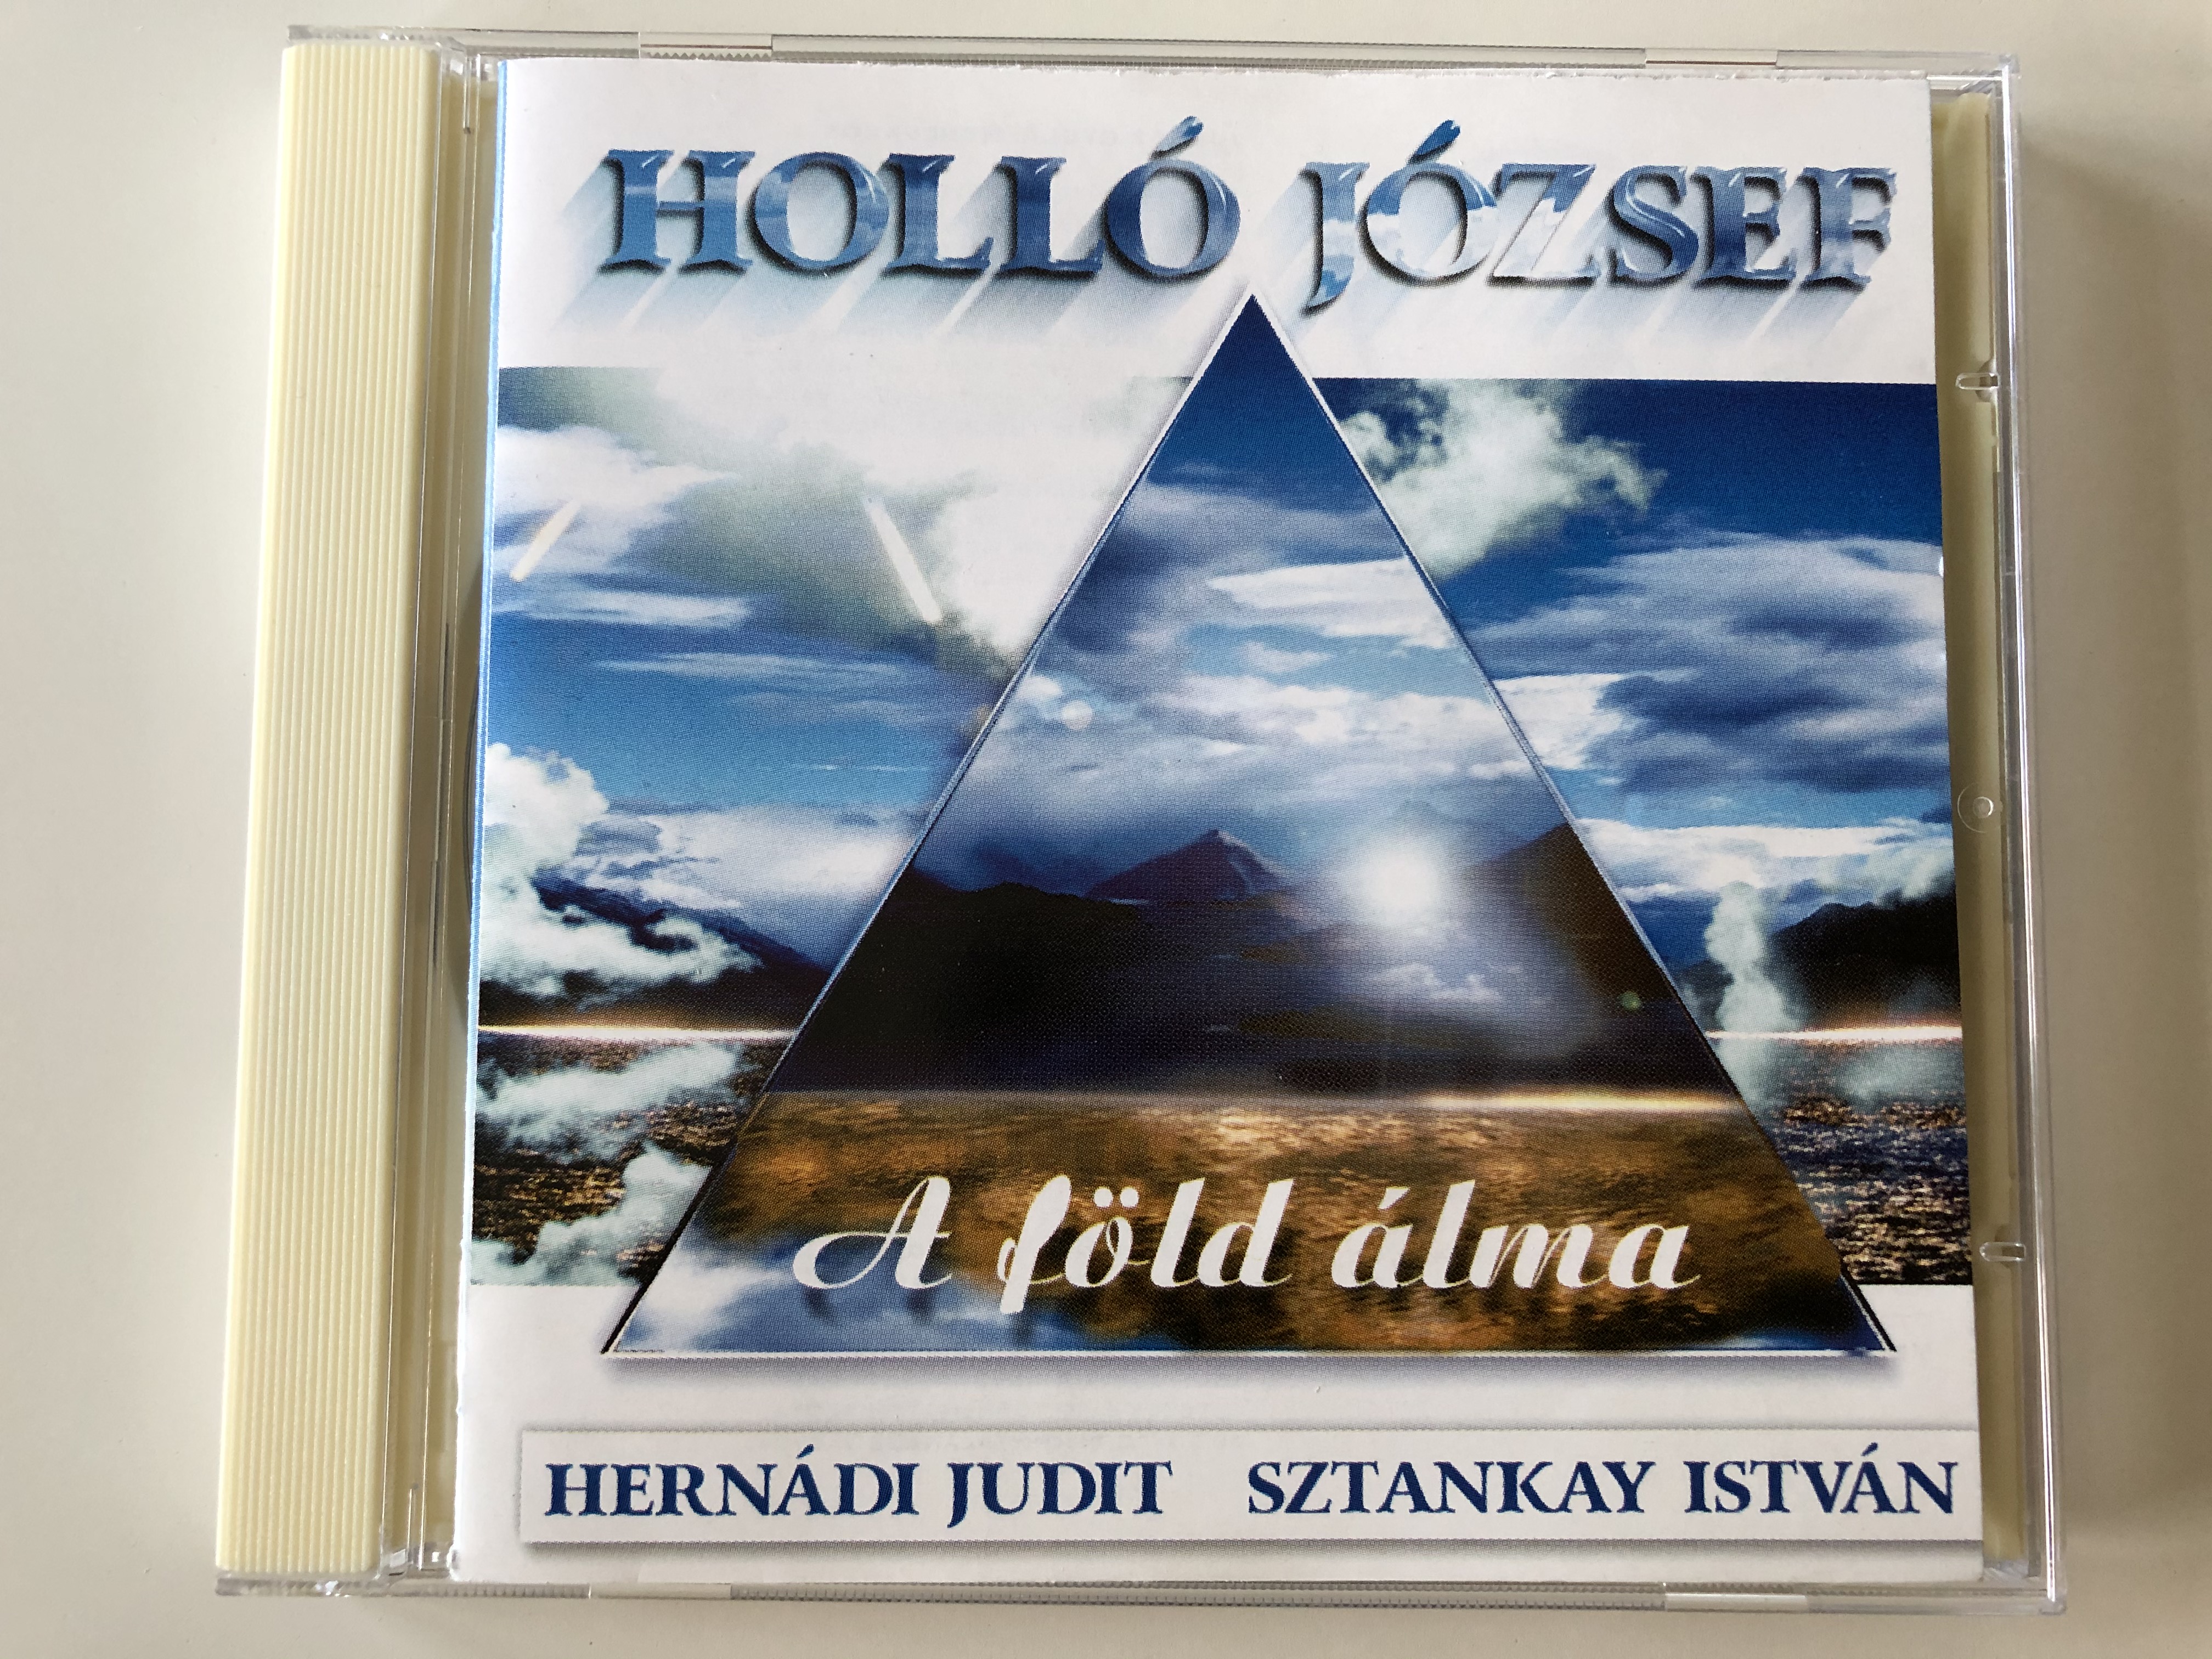 holl-j-zsef-a-f-ld-lma-hernadi-judit-sztankay-istvan-hollo-music-audio-cd-1996-h-13-1-.jpg